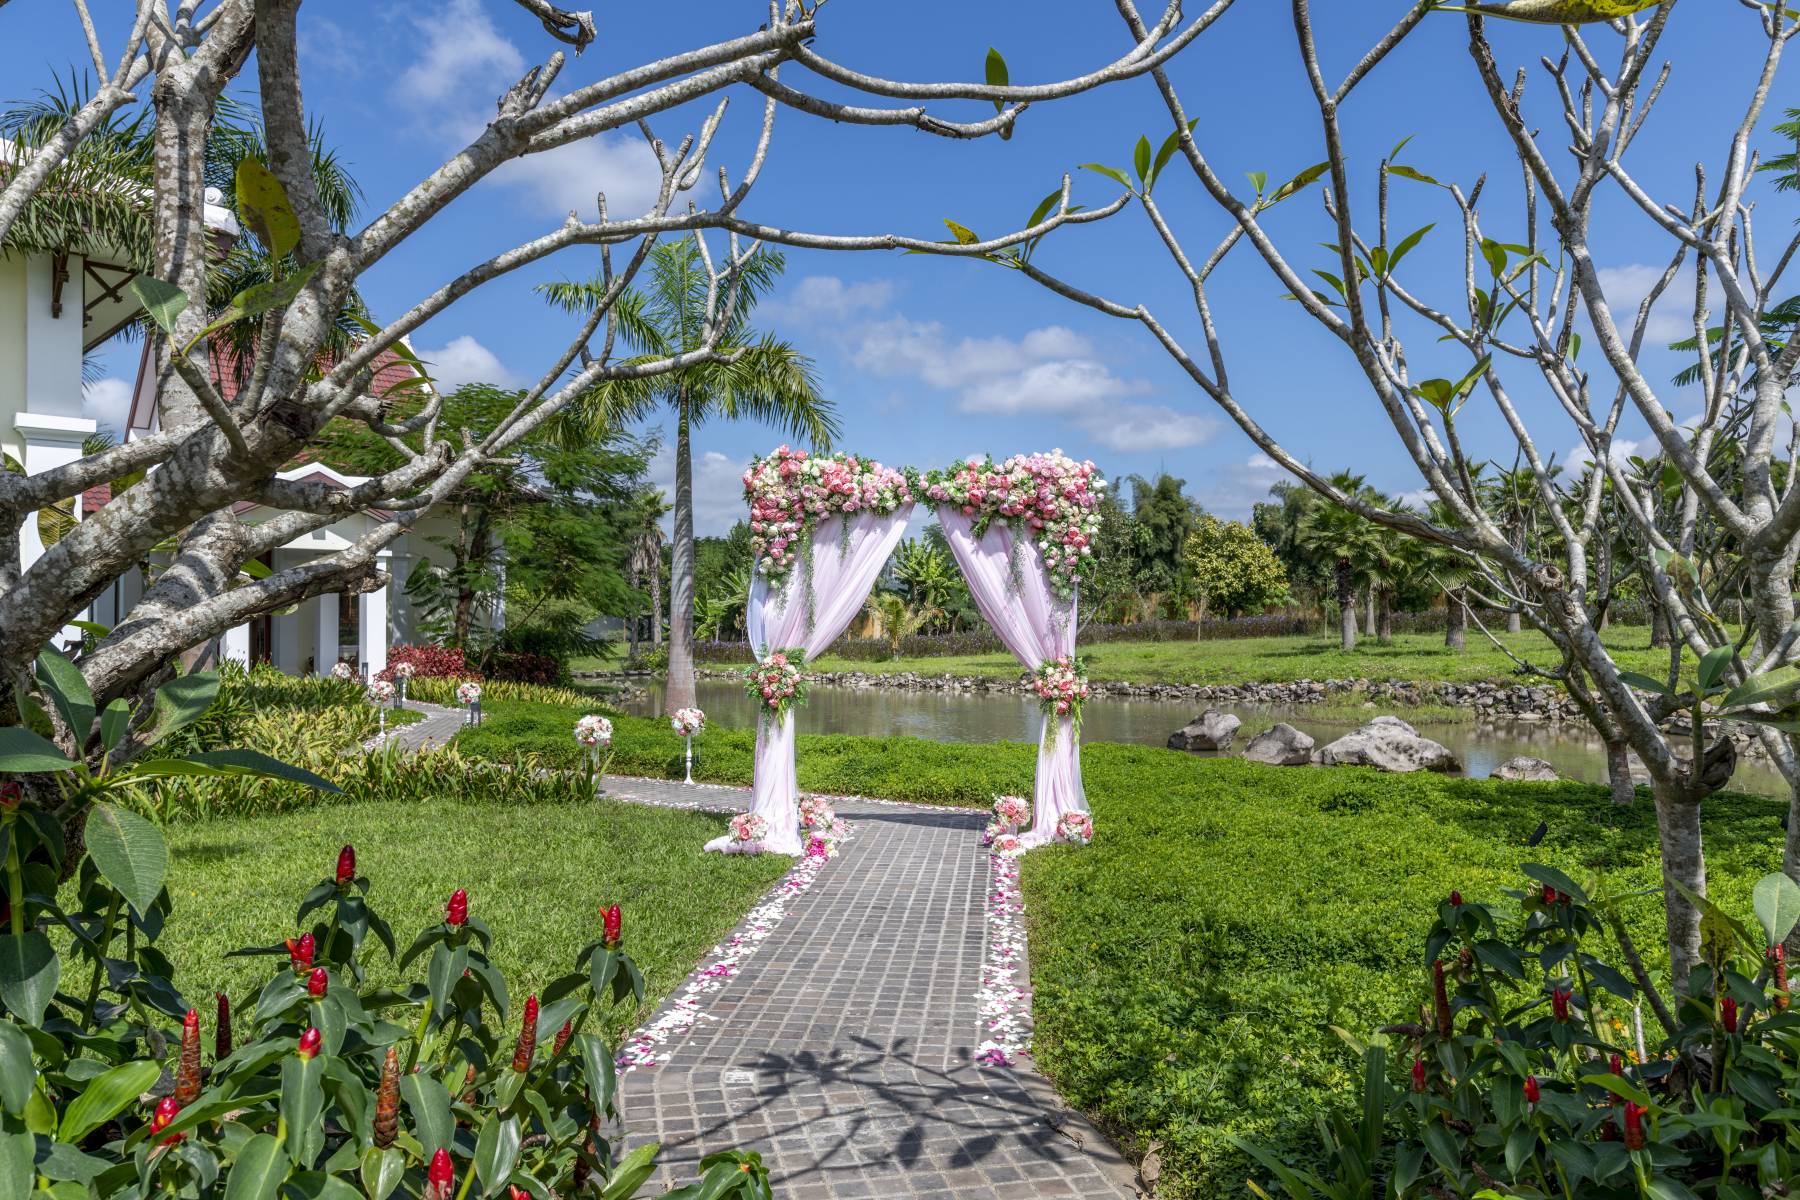 Wedding Archway at Pullman Luang Prabang Laos